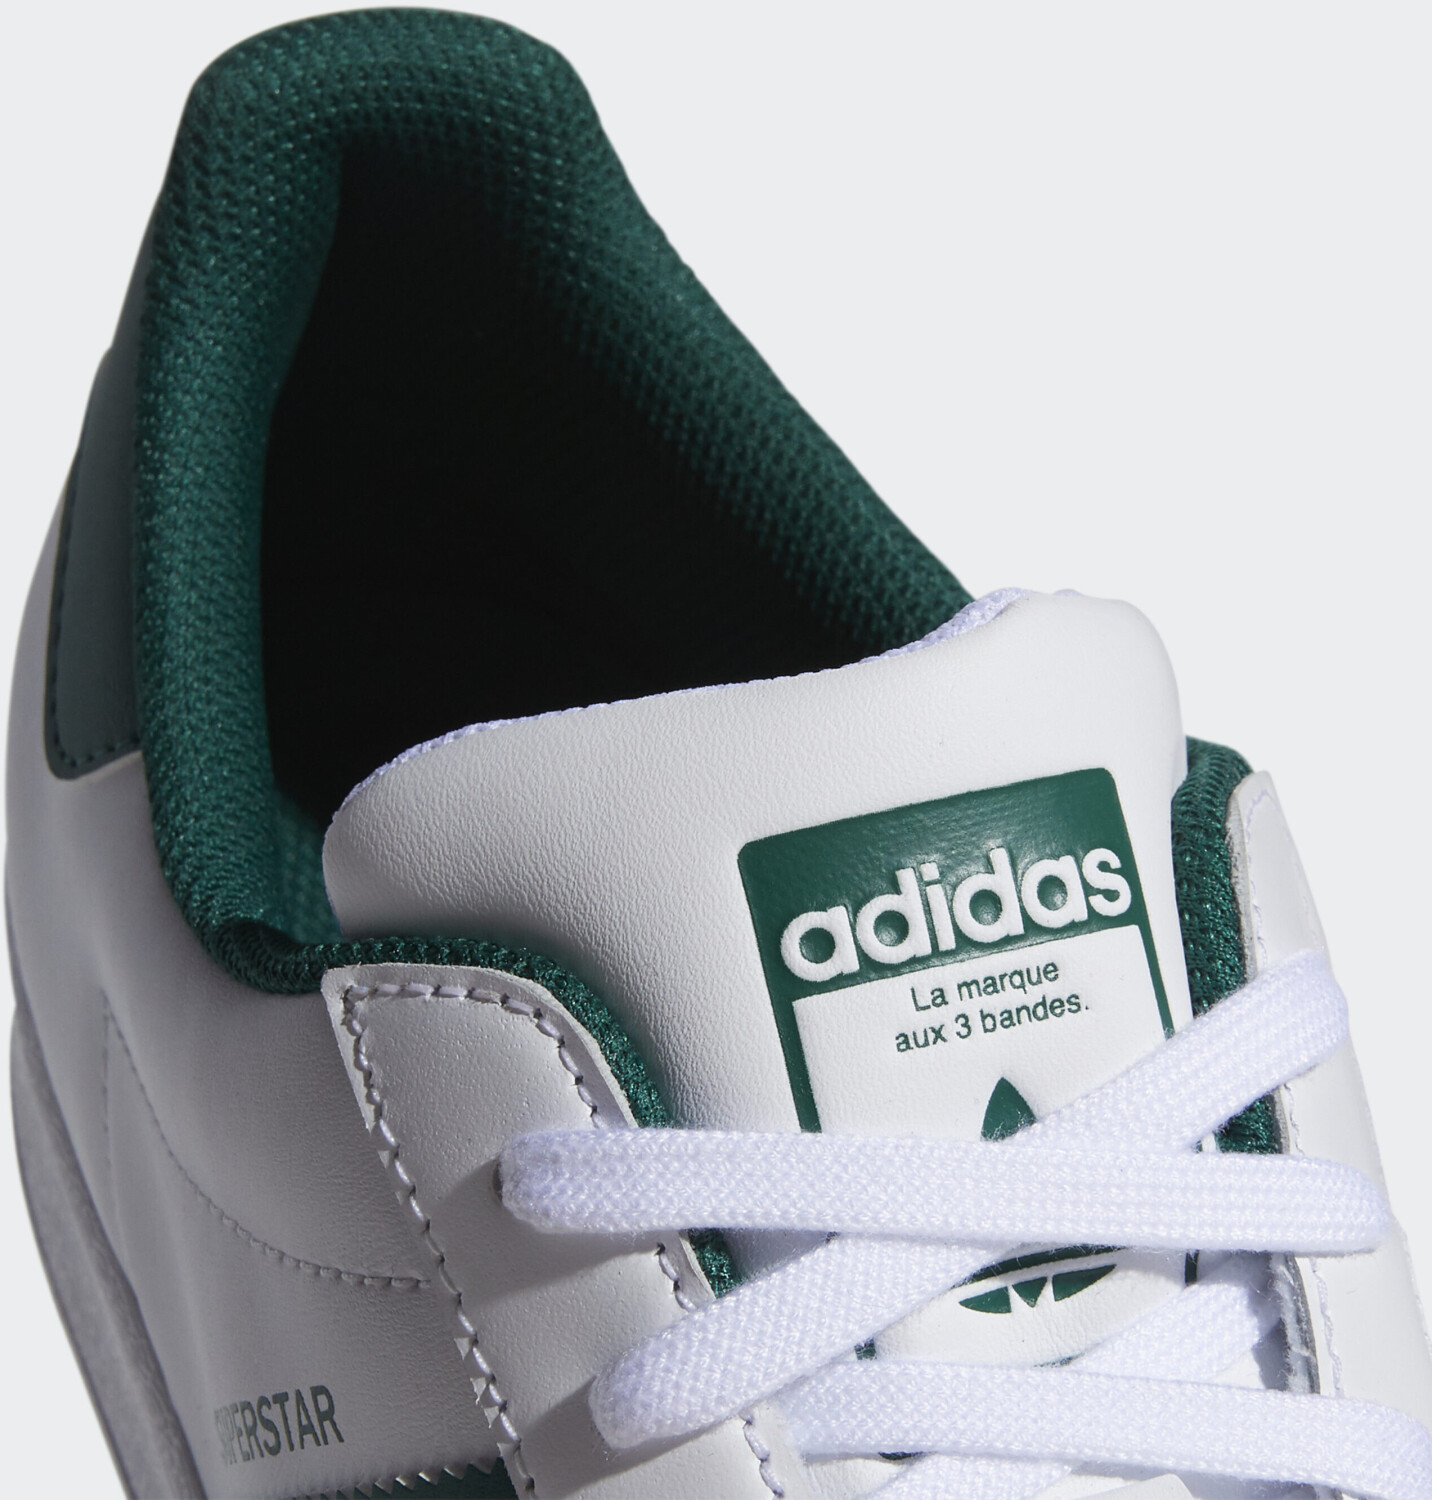 Adidas Superstar cloud white/collegiate green/cloud white ab 71,92 € |  Preisvergleich bei